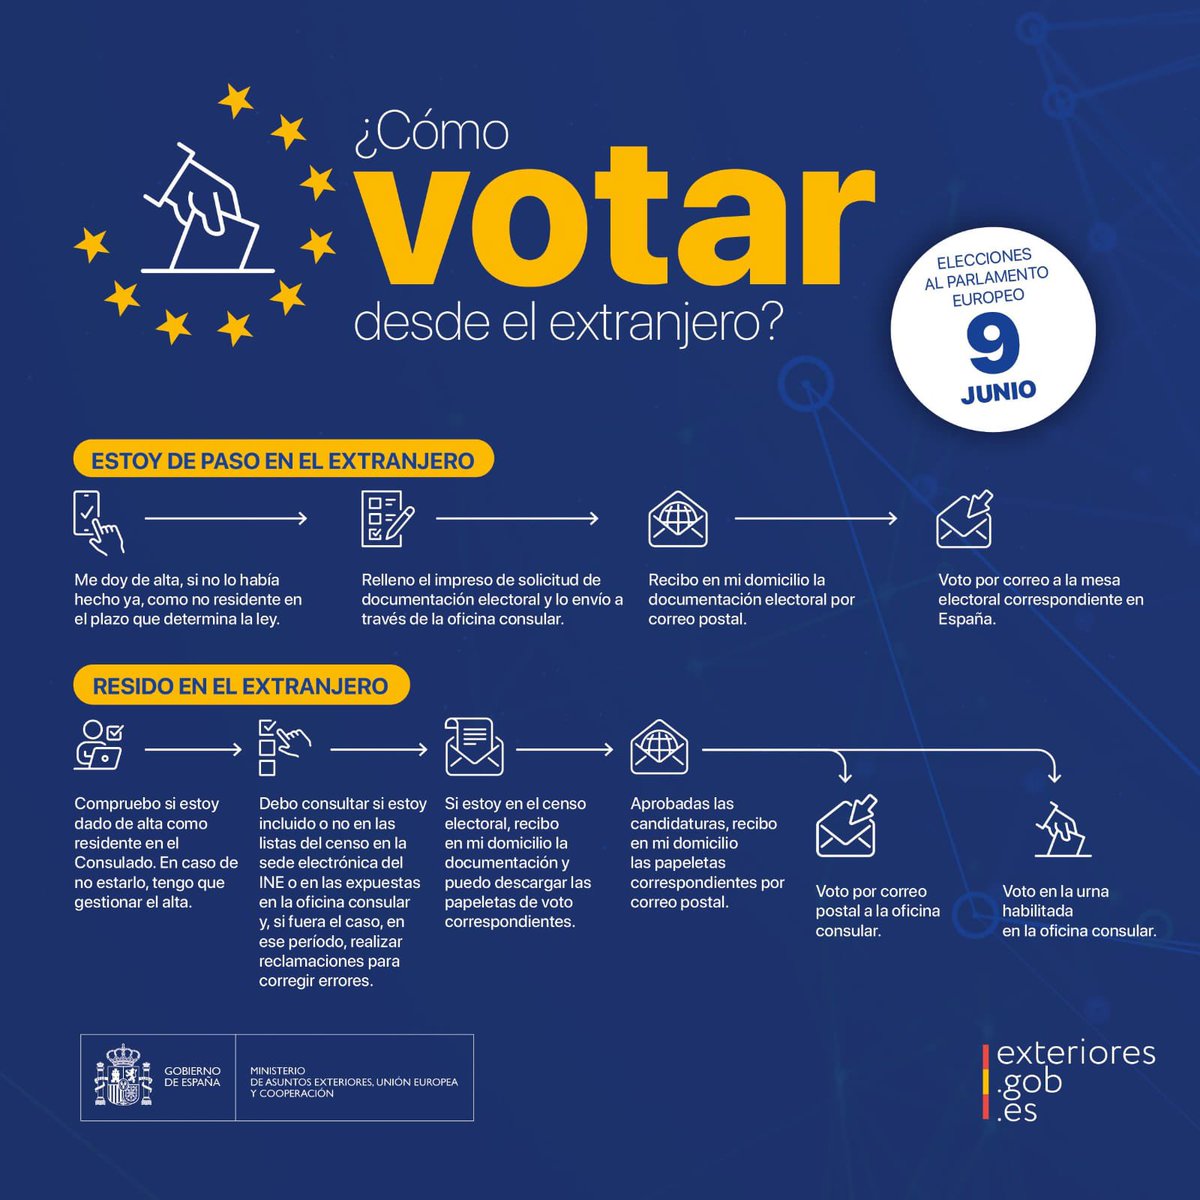 #VotoCERA: si eres español residente en la circunscripción de @EmbEspCanada con derecho a voto en las #EleccionesEuropeas #EleccionesUE2024 del #9J, recuerda que el período para depositar el #VotoEnUrna es entre el 1 y el 6 de junio, ambos inclusive.

Más ℹ️ en: